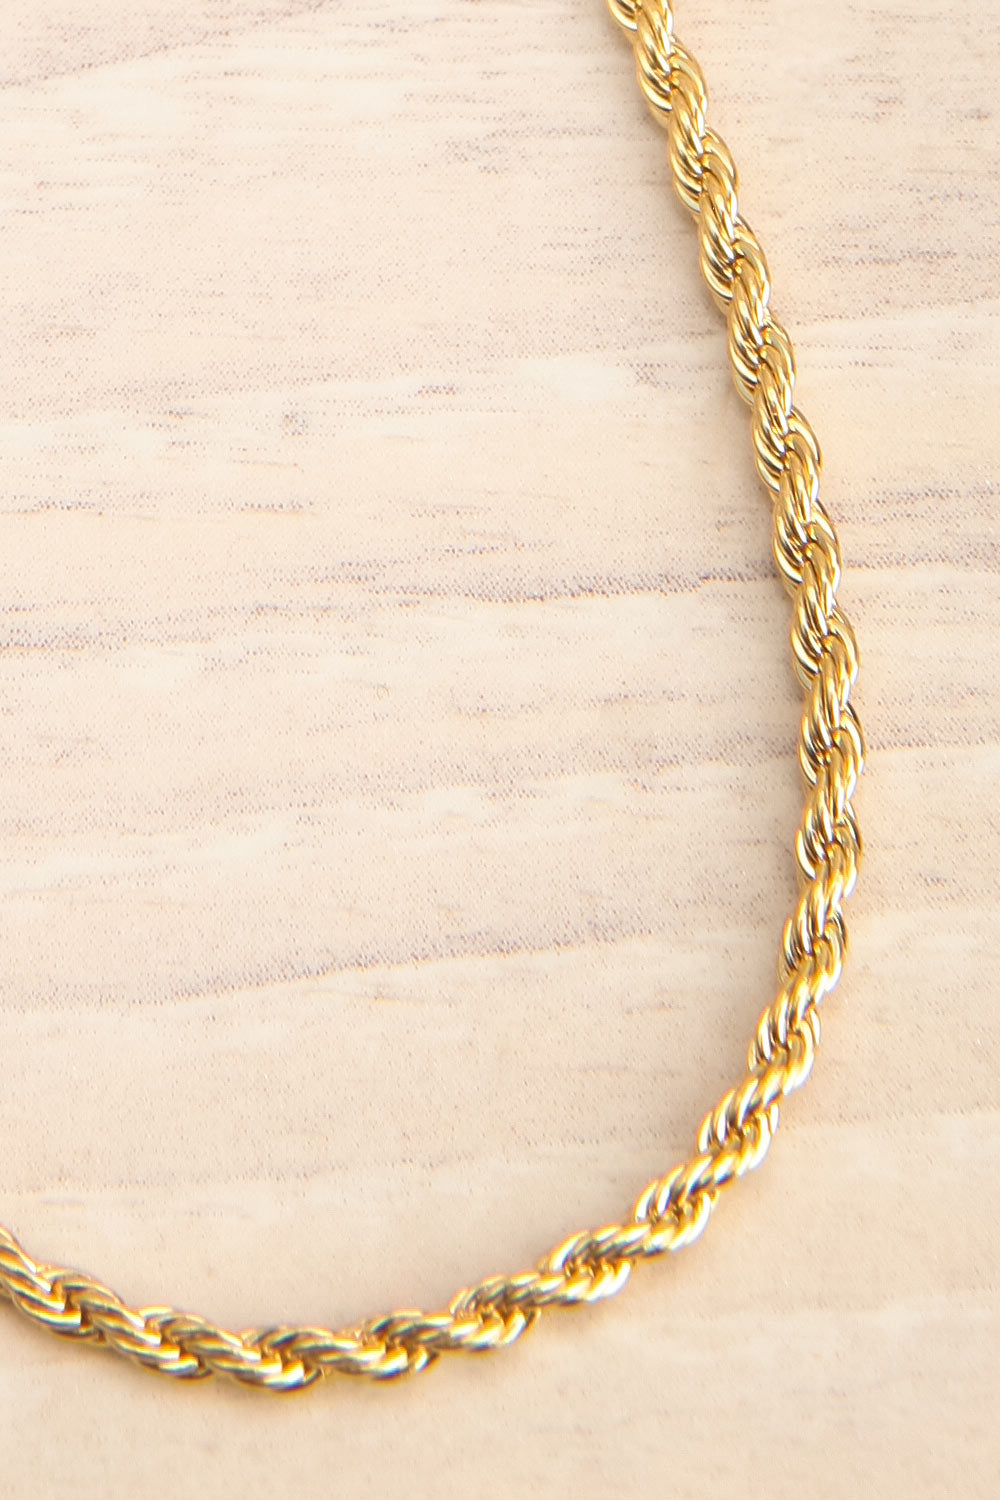 Cognassier Gold Chain Necklace | La petite garçonne flat close-up